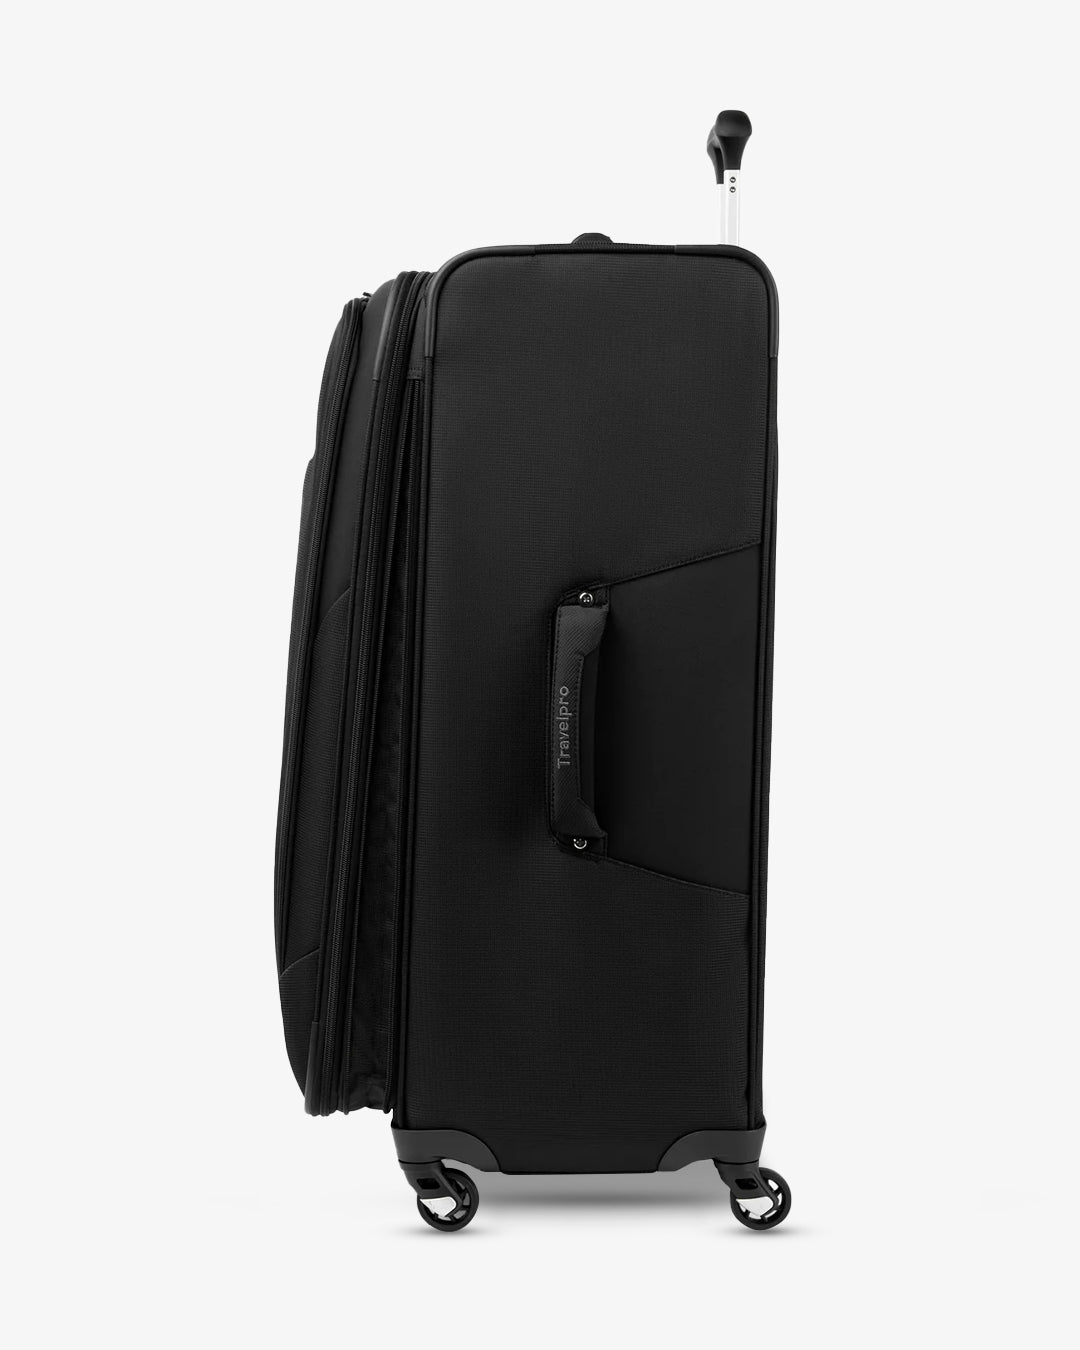 Travelpro Maxlite 5 Softside Luggage (LARGE)